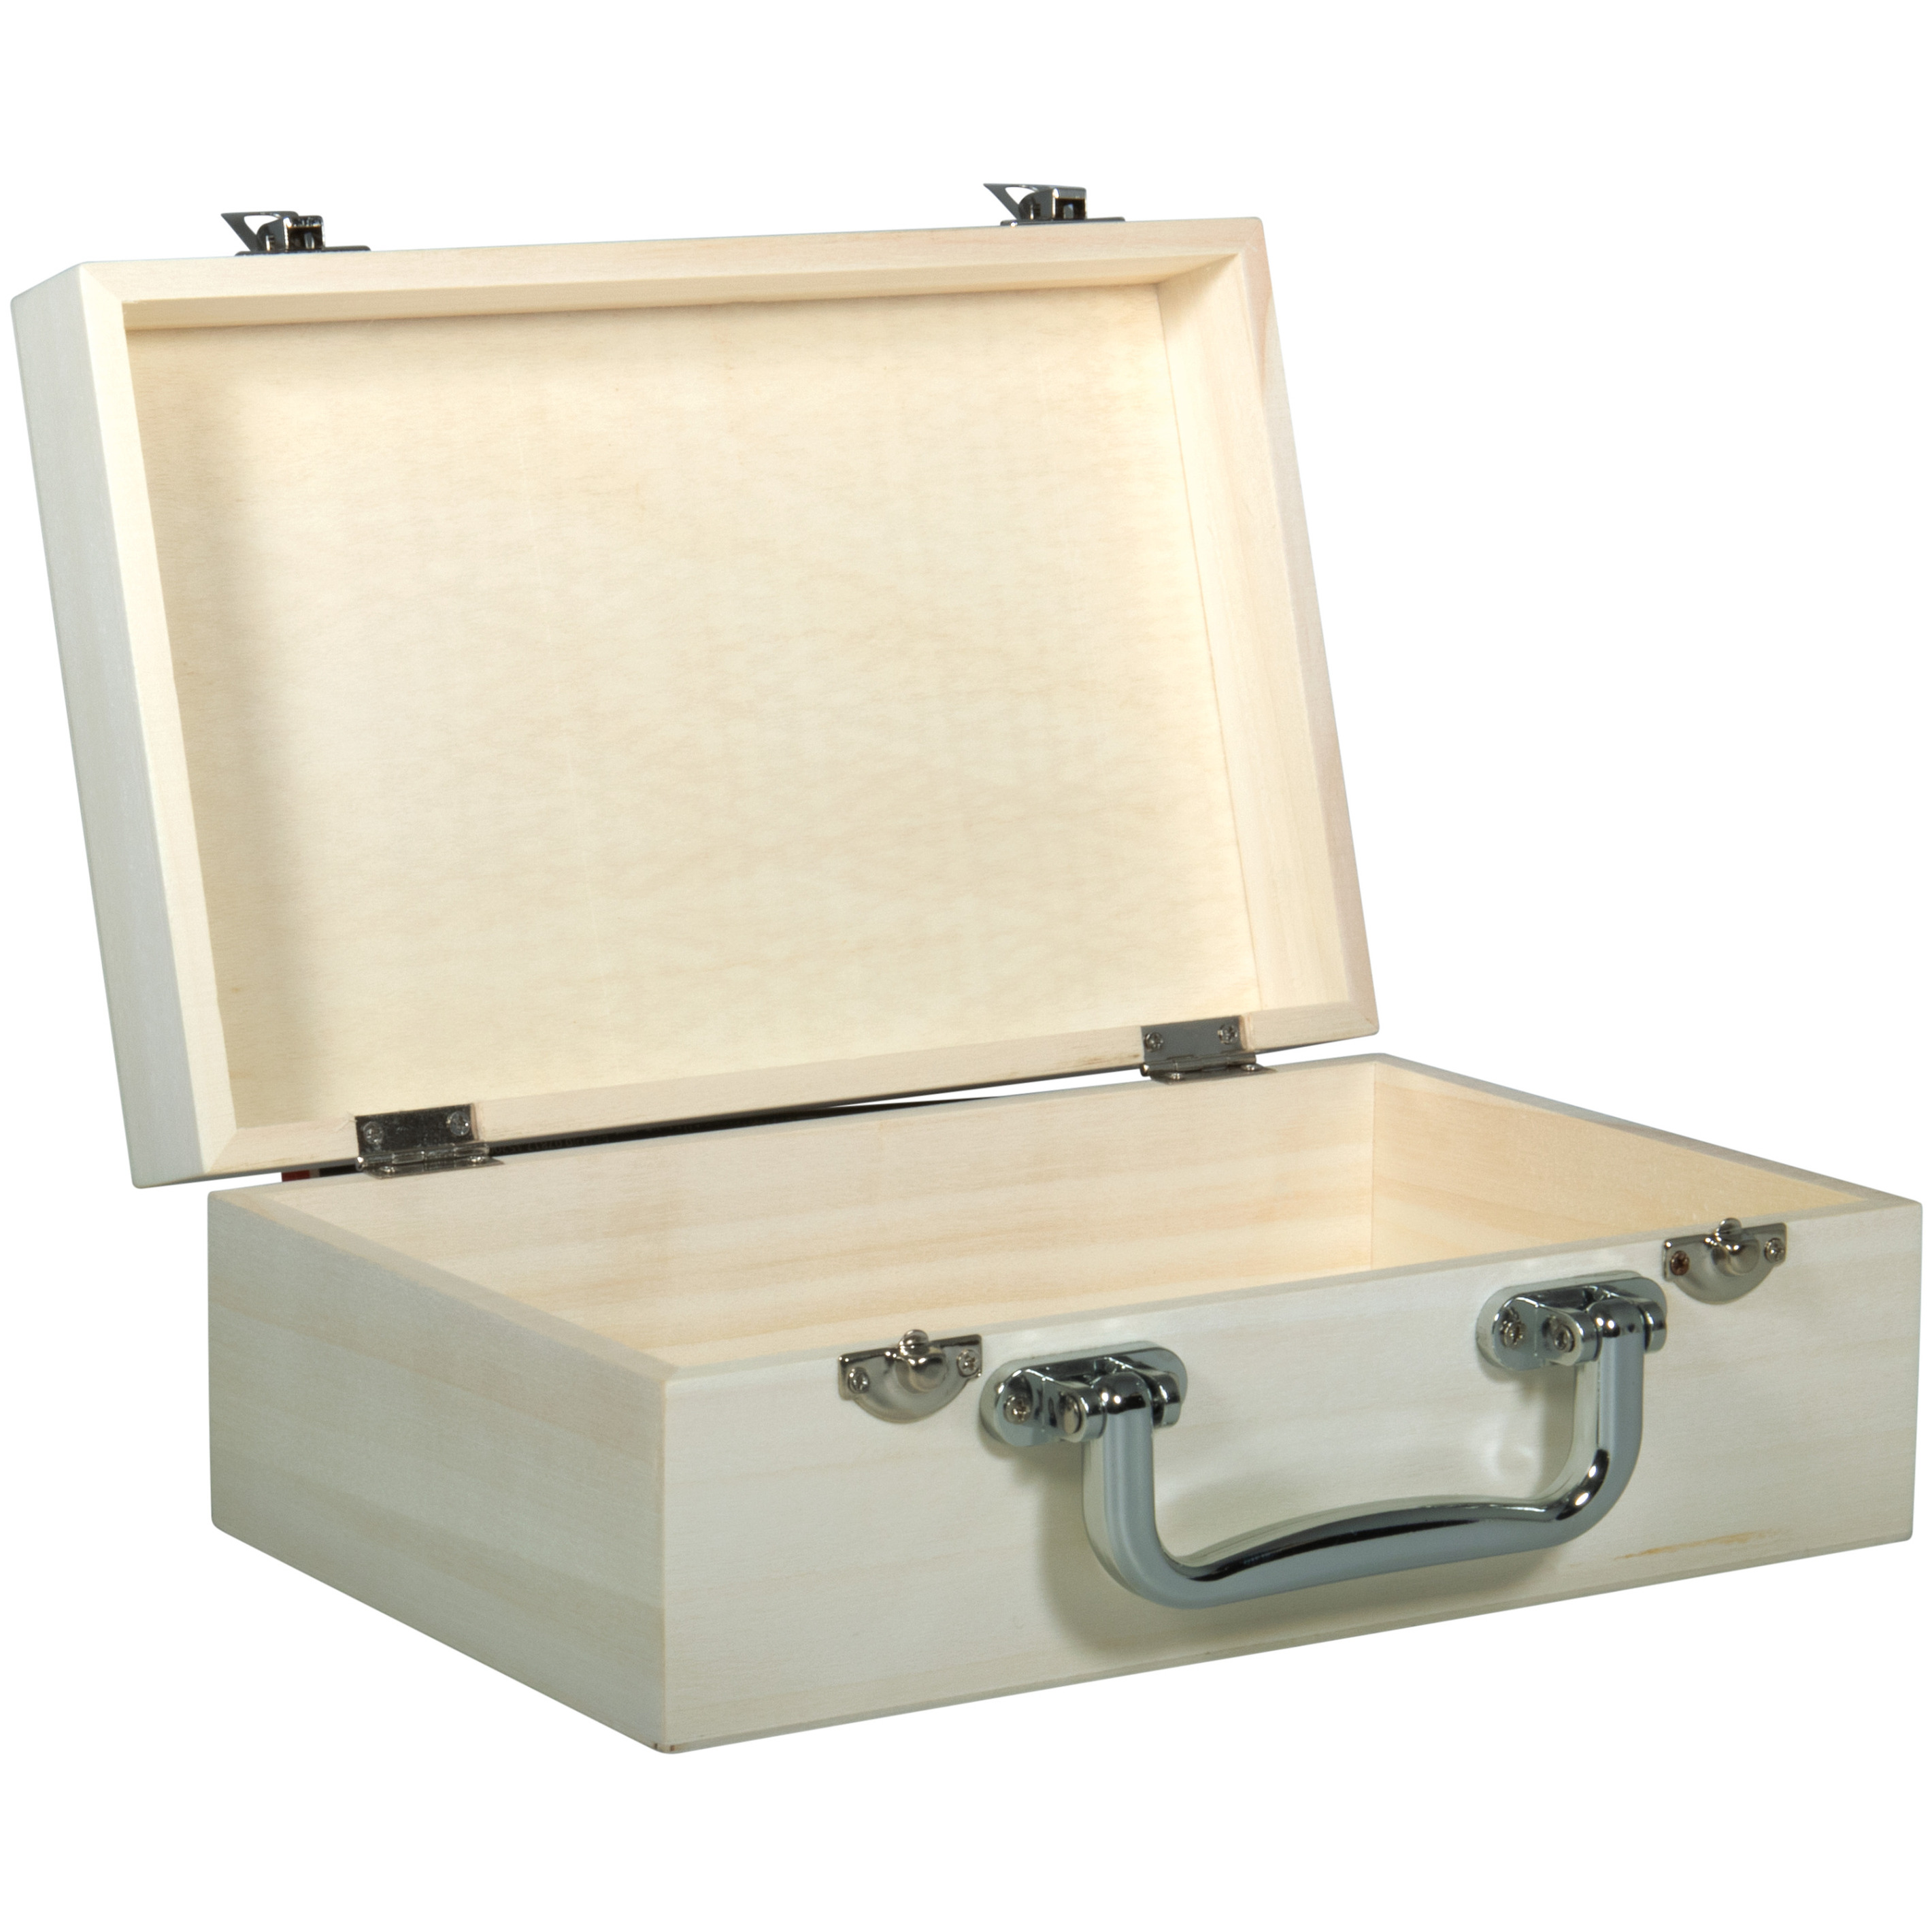 Houten koffer kistje sluiting-deksel 25 x 16 x 9 cm Sieraden-spulletjes opberg box